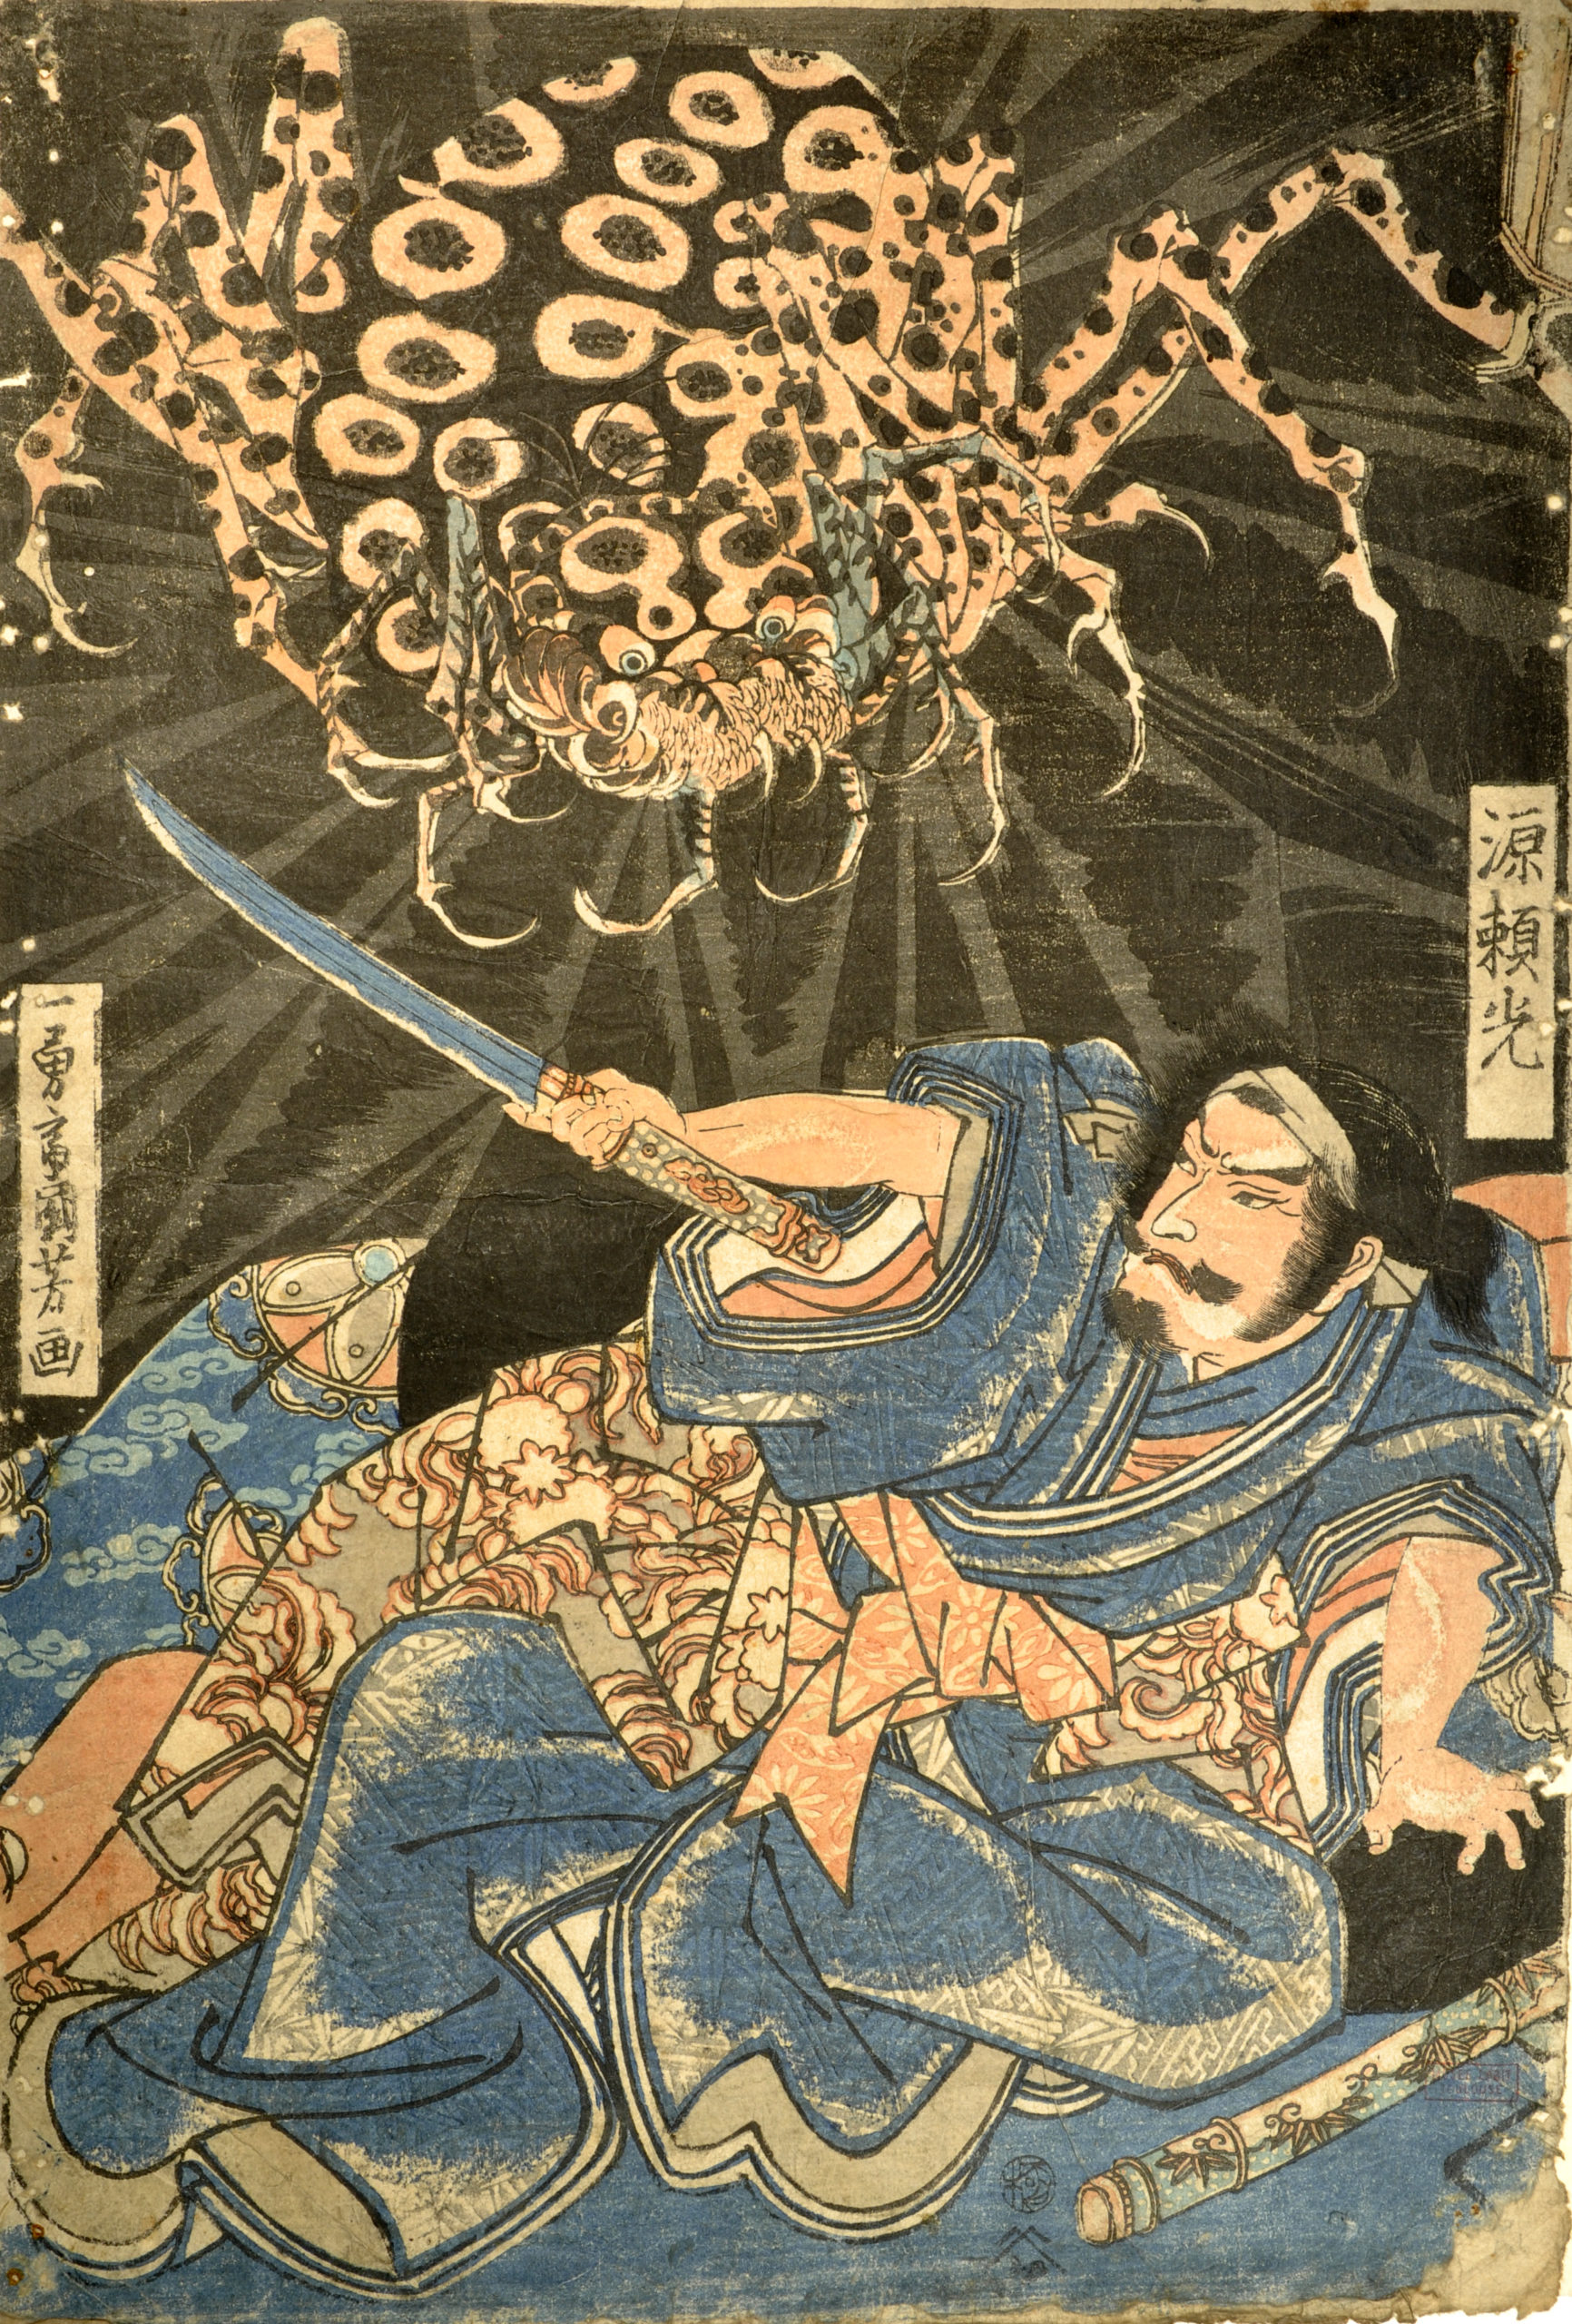 Histoire extraordinaire : La légende du samouraï empoisonné